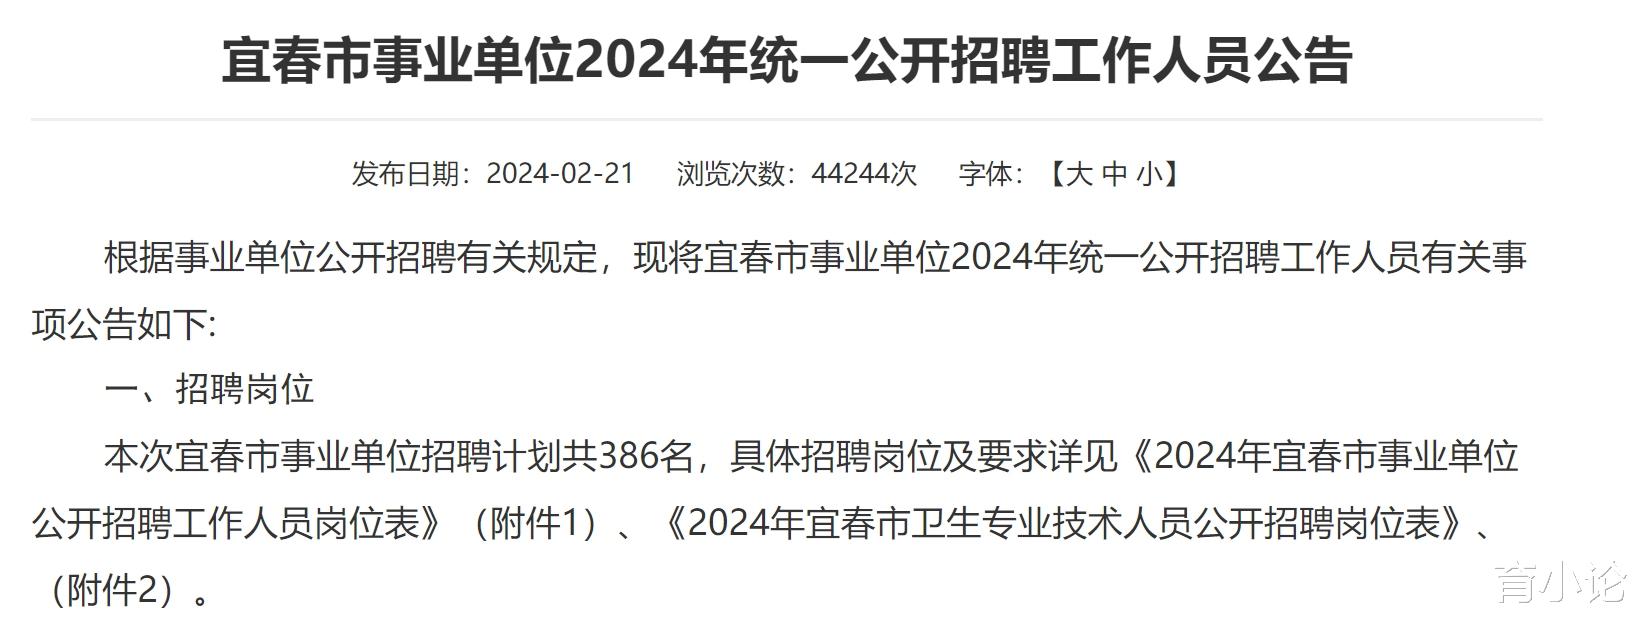 2024年宜春市事业单位招386人! 2月23日起报名!